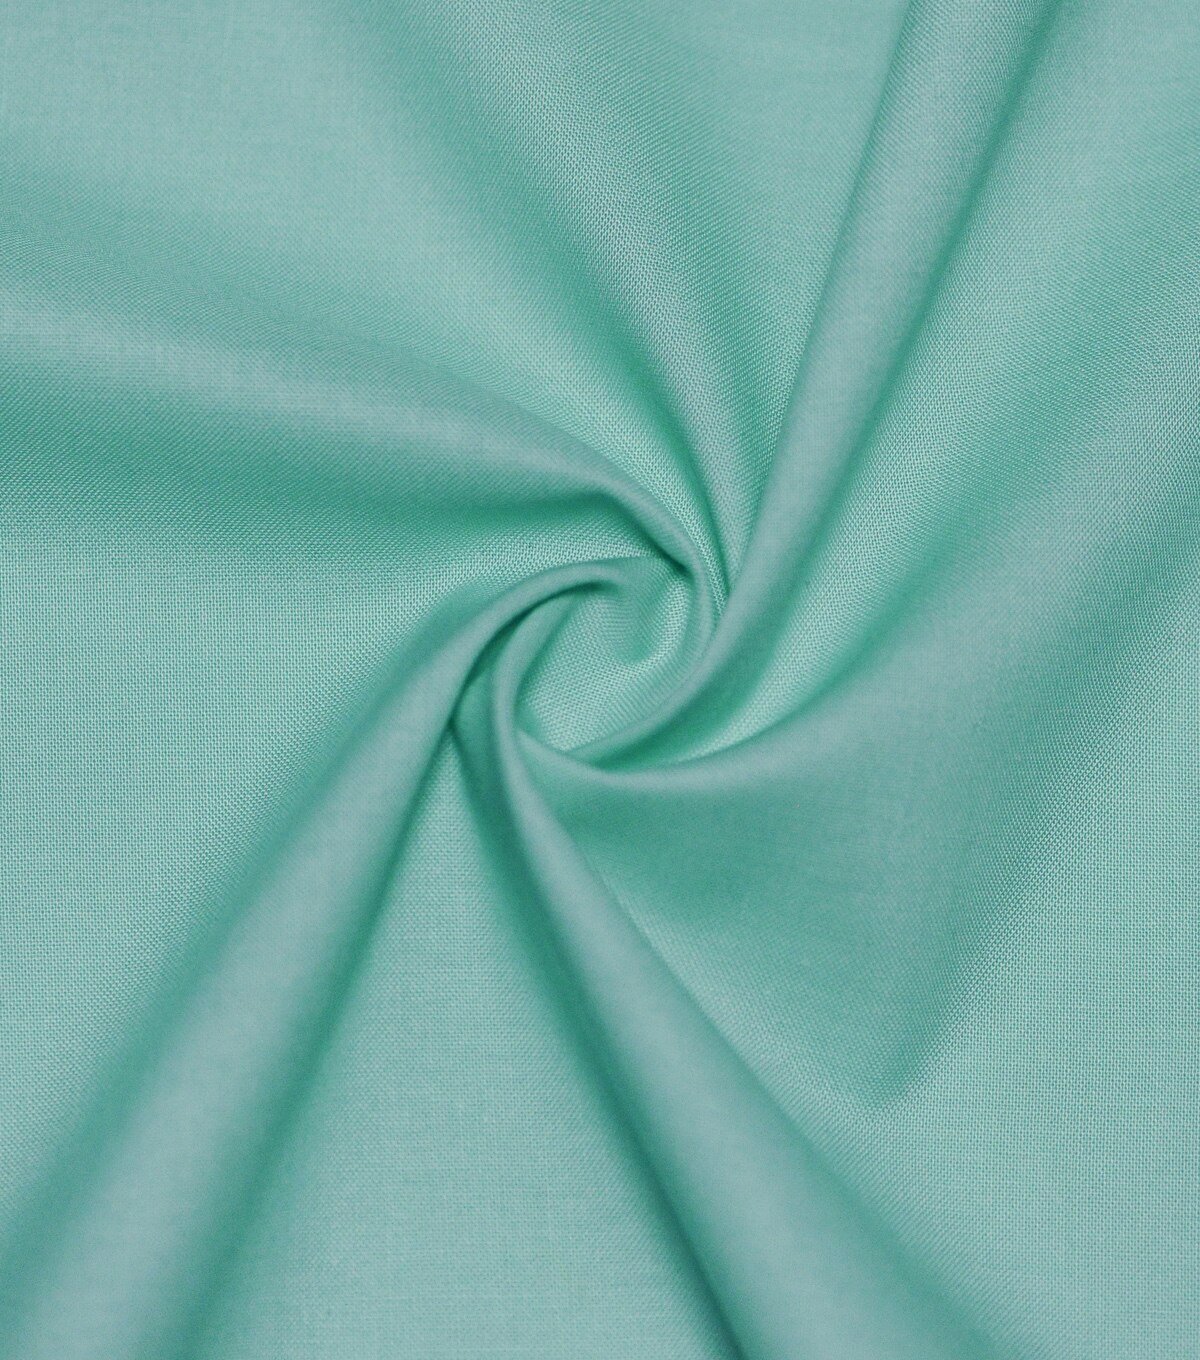 Premium Cotton Fabric -Astrid Teal | JOANN